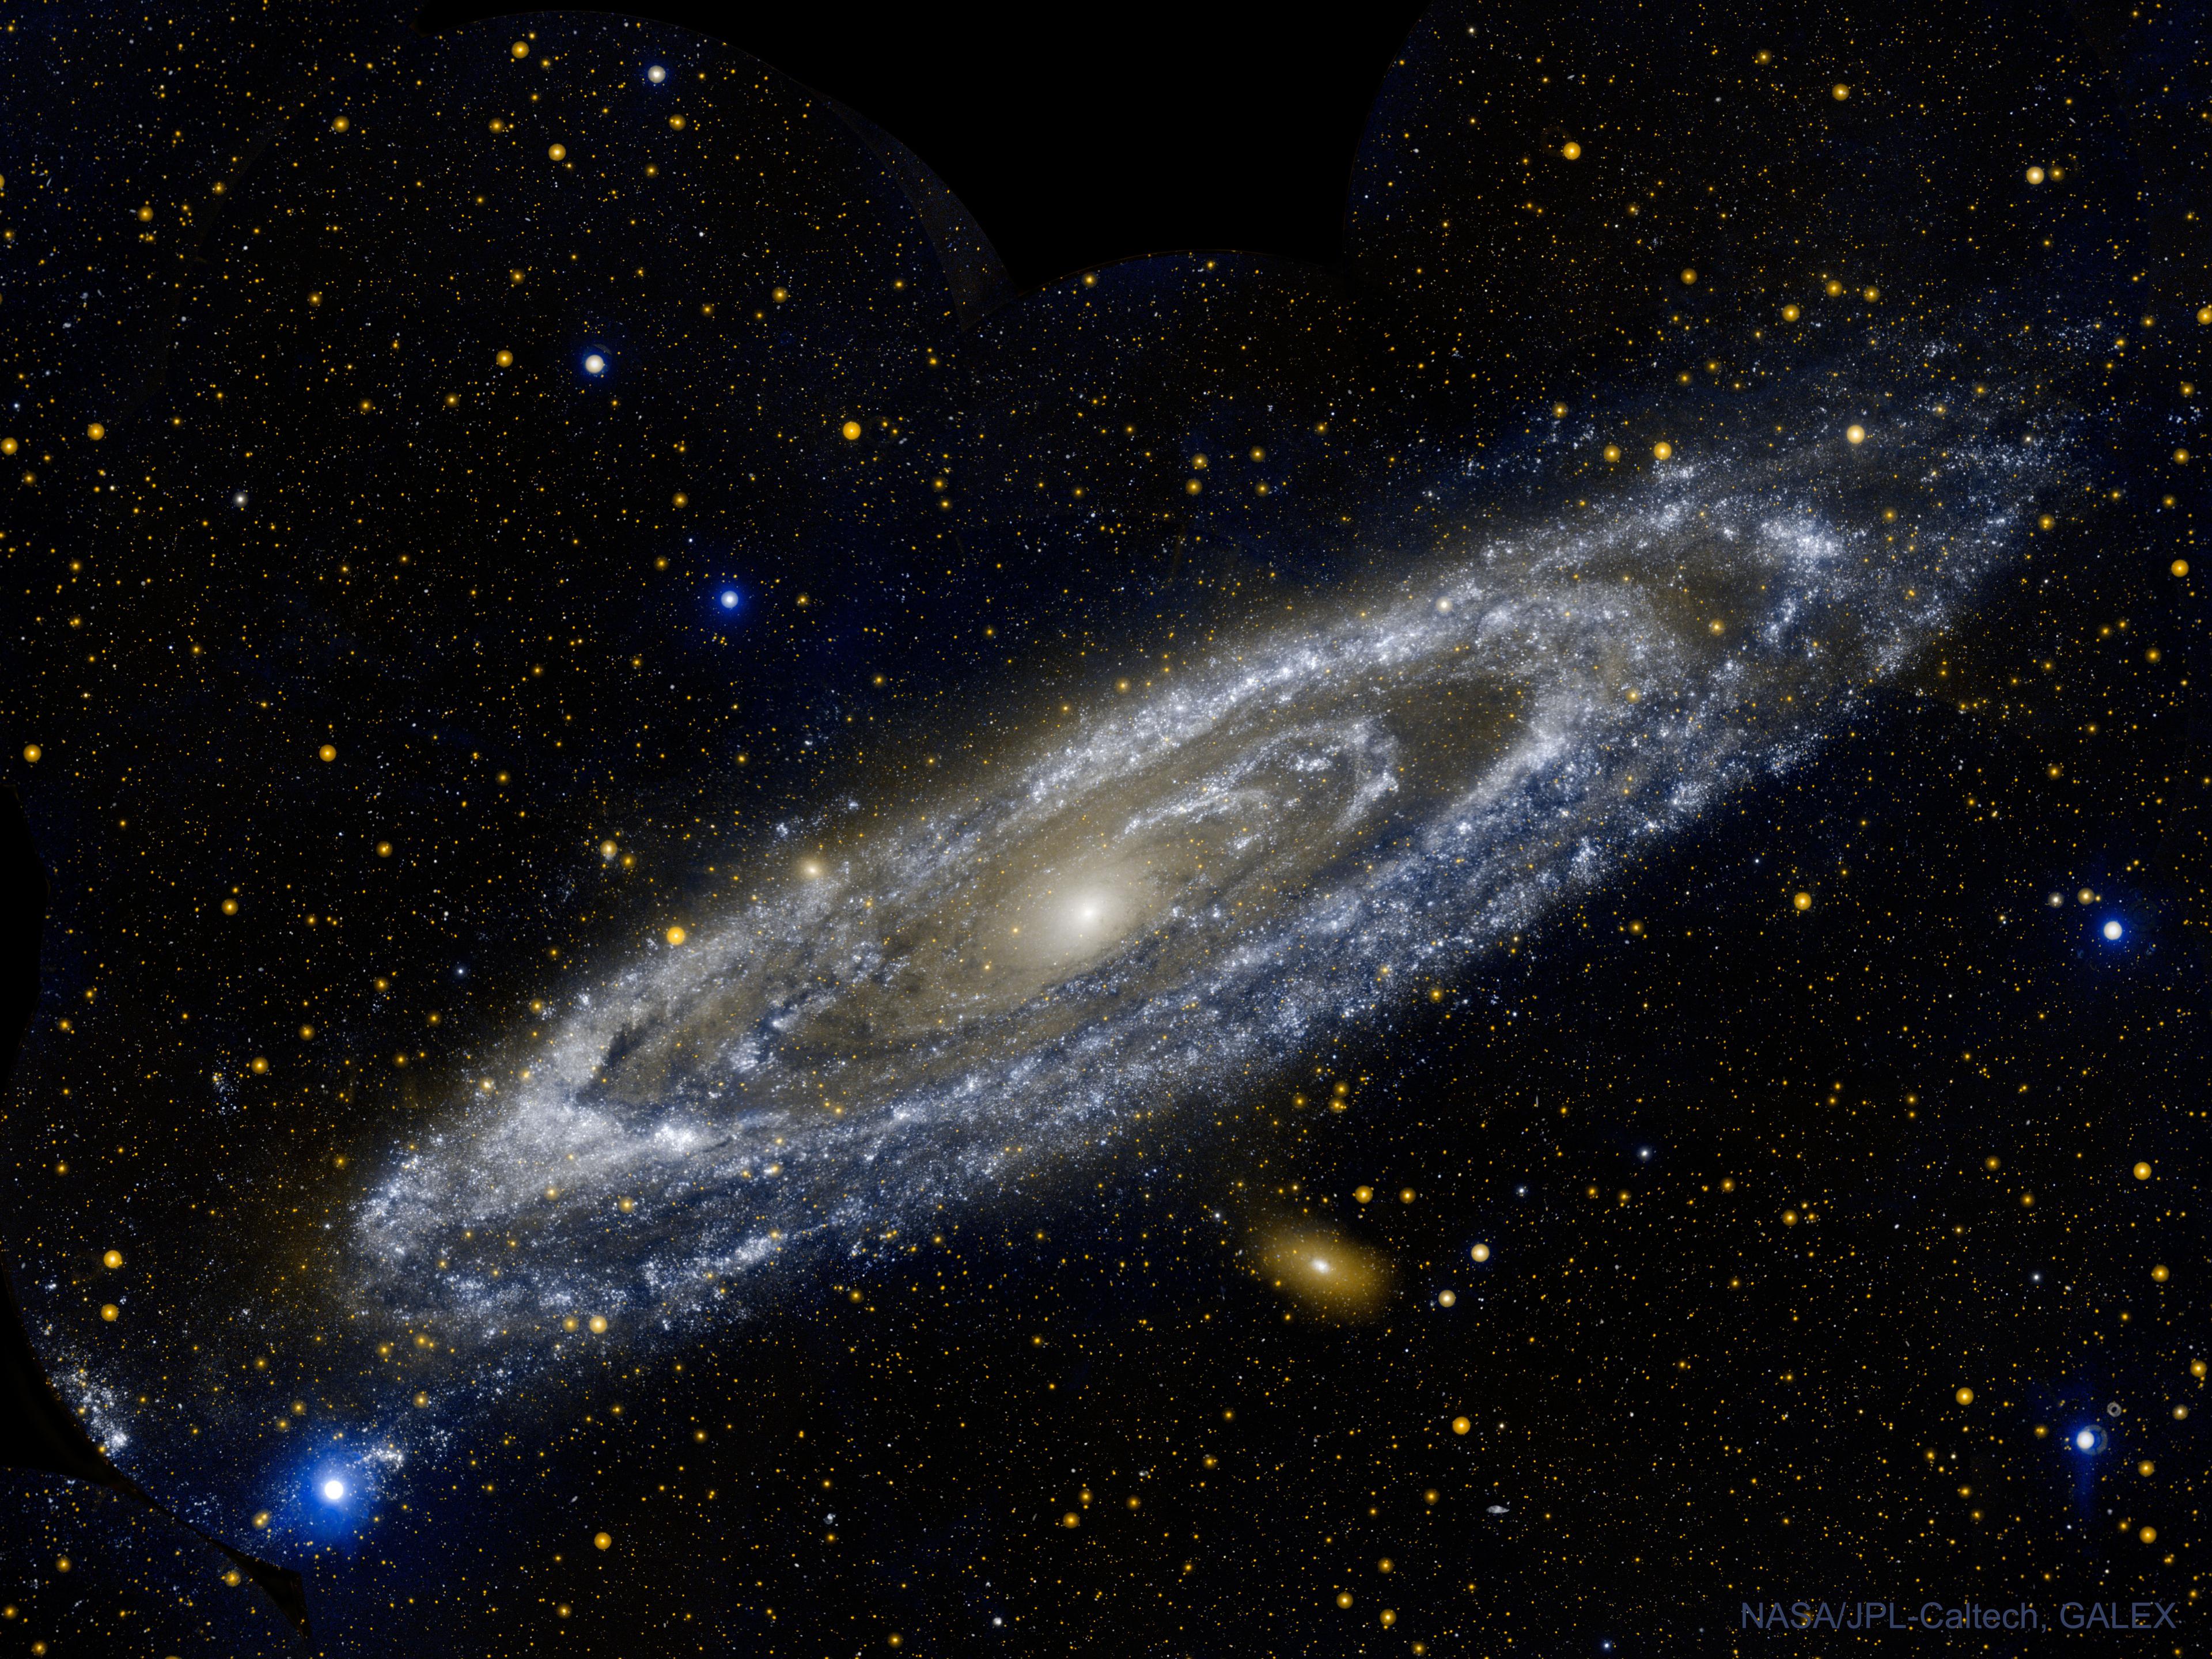 صورة تظهر مجرّة المرأة المسلسلة م31، كما تم تصويرها من المرصد الفضائي GALEX التابع لناسا بالأشعّة فوق البنفسجيّة.